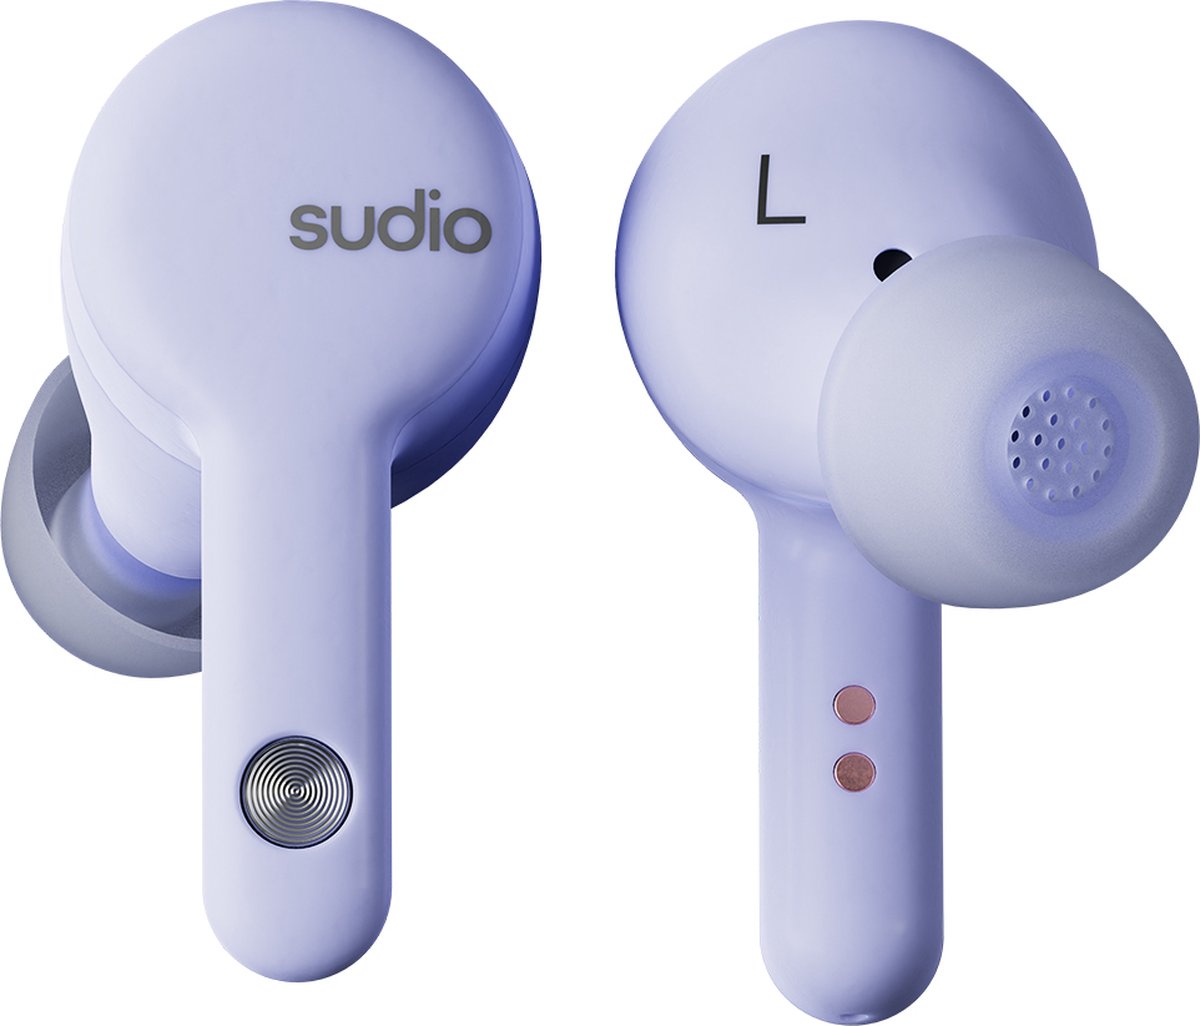 Sudio A2 in-ear true wireless earphones - draadloze oordopjes - met active noice cancellation (ANC) - paars